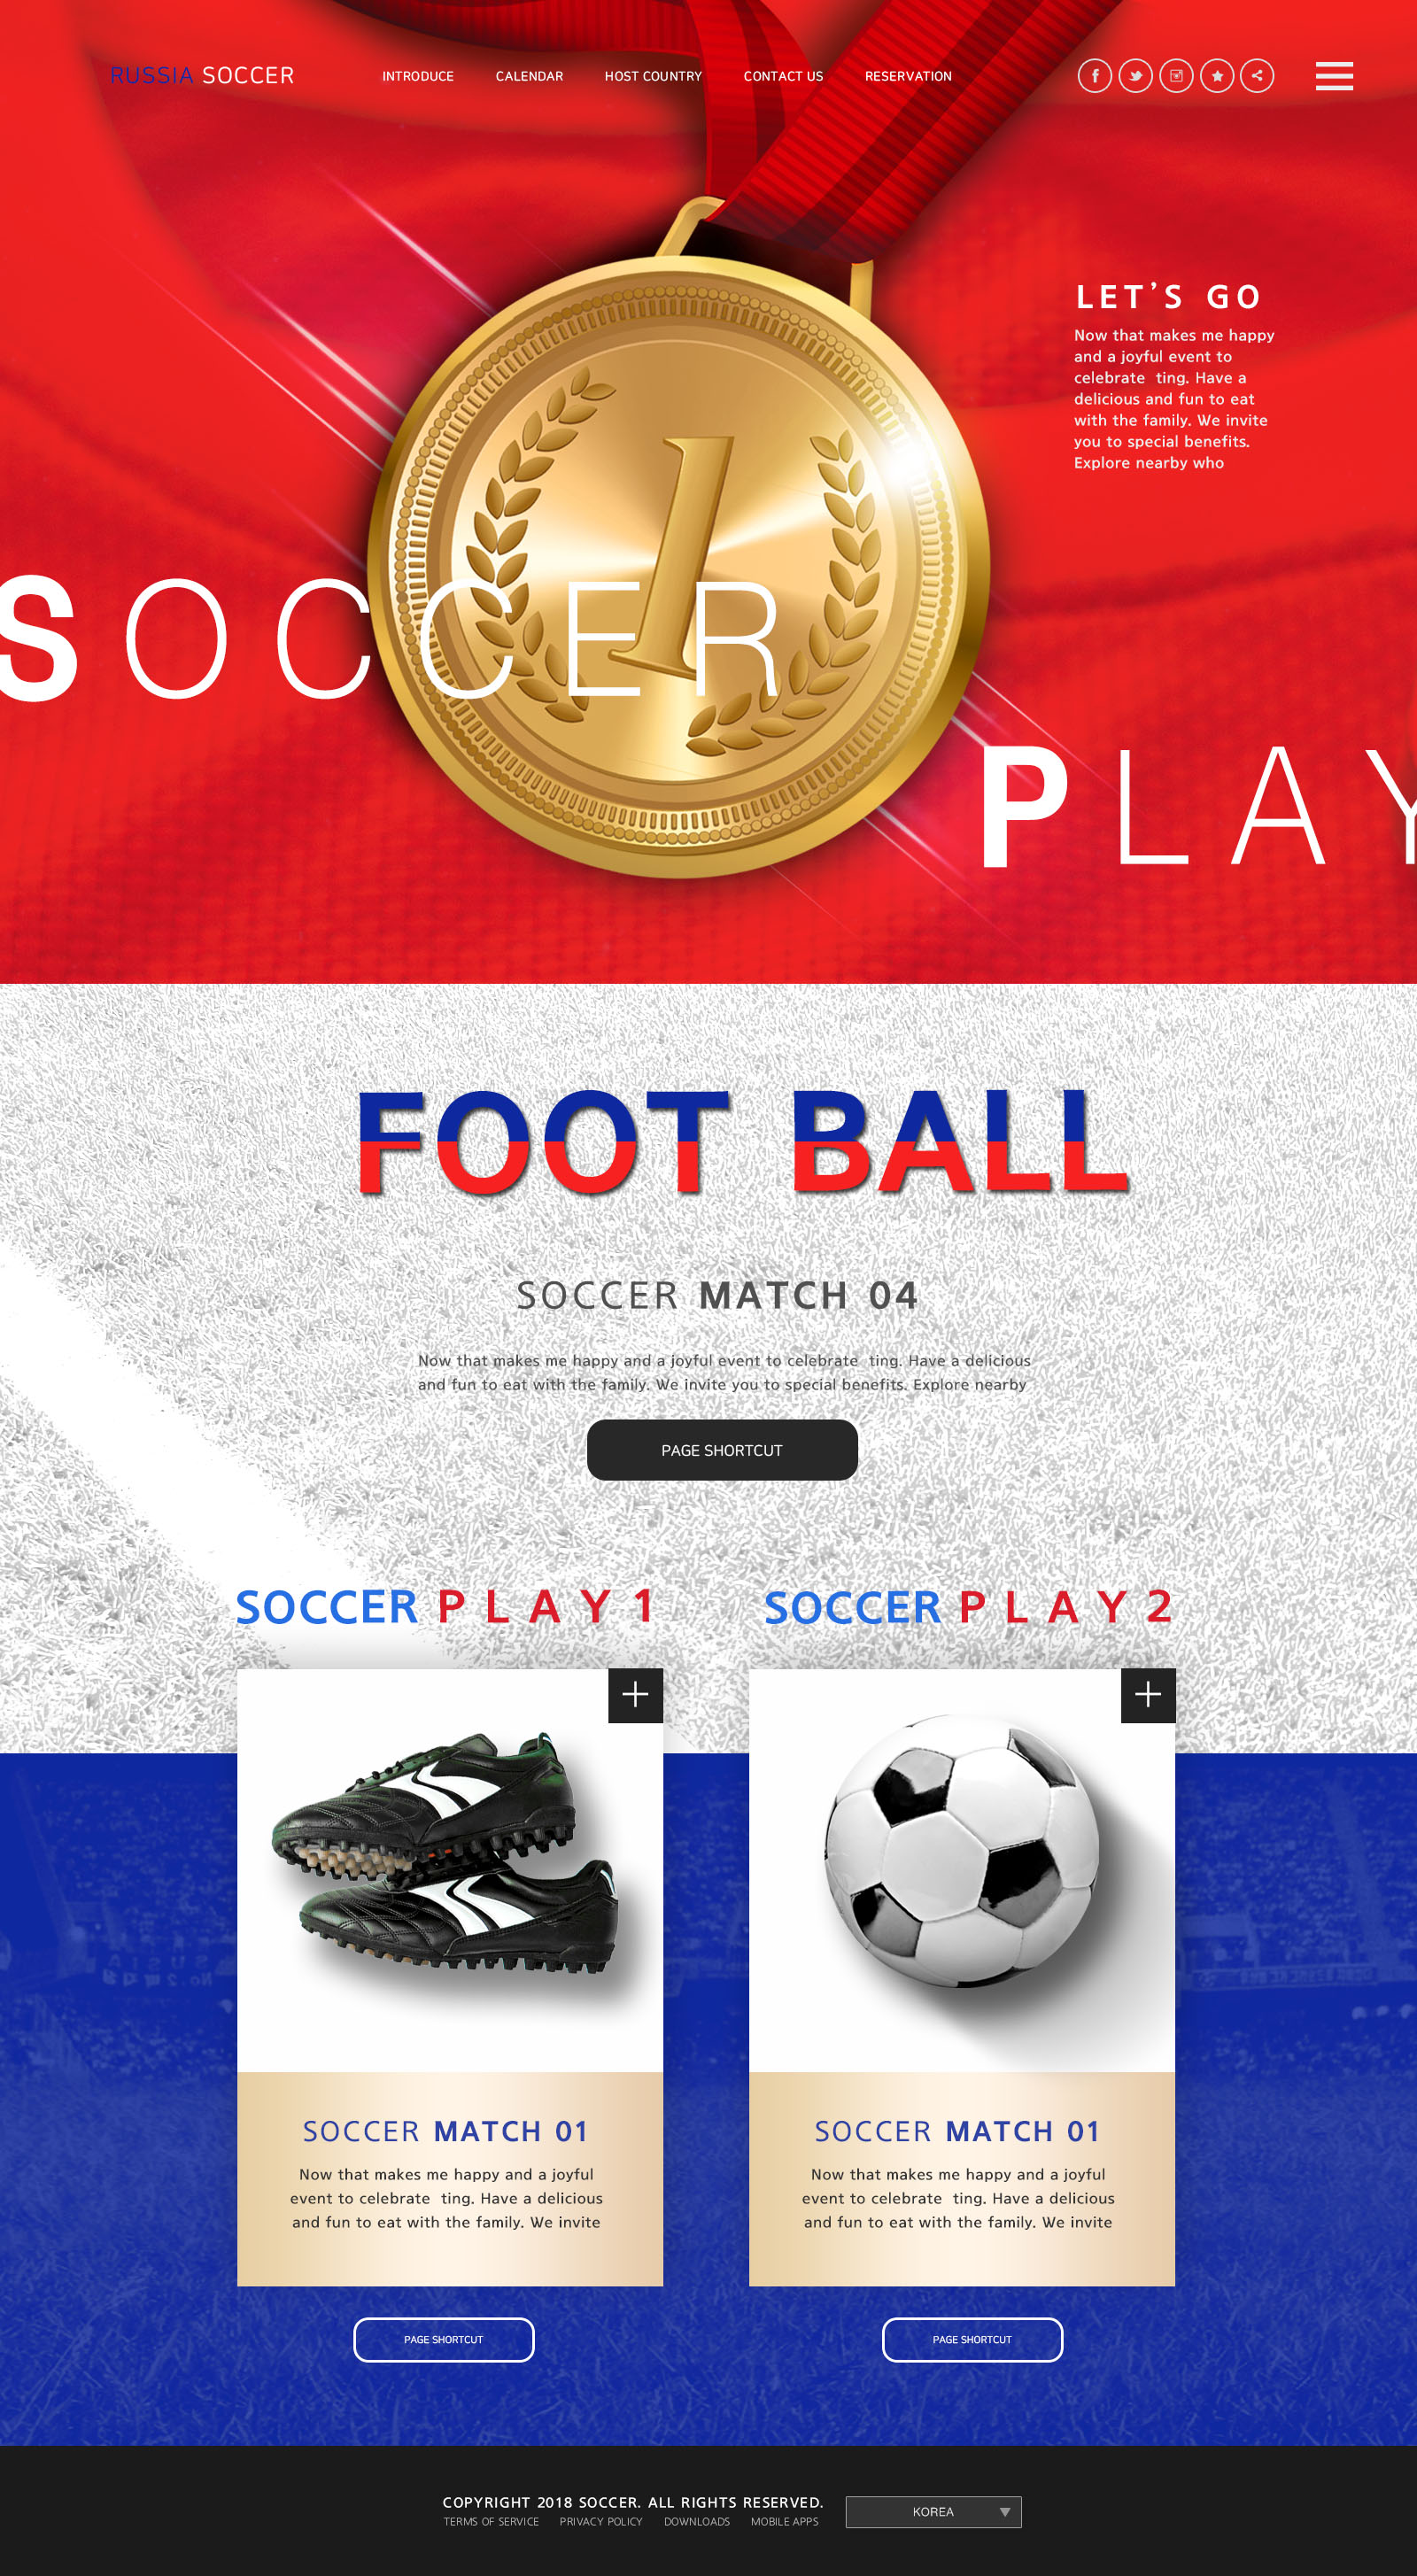 世界杯足球专题广告设计PSD模板第一素材精选(韩国风格)插图(3)